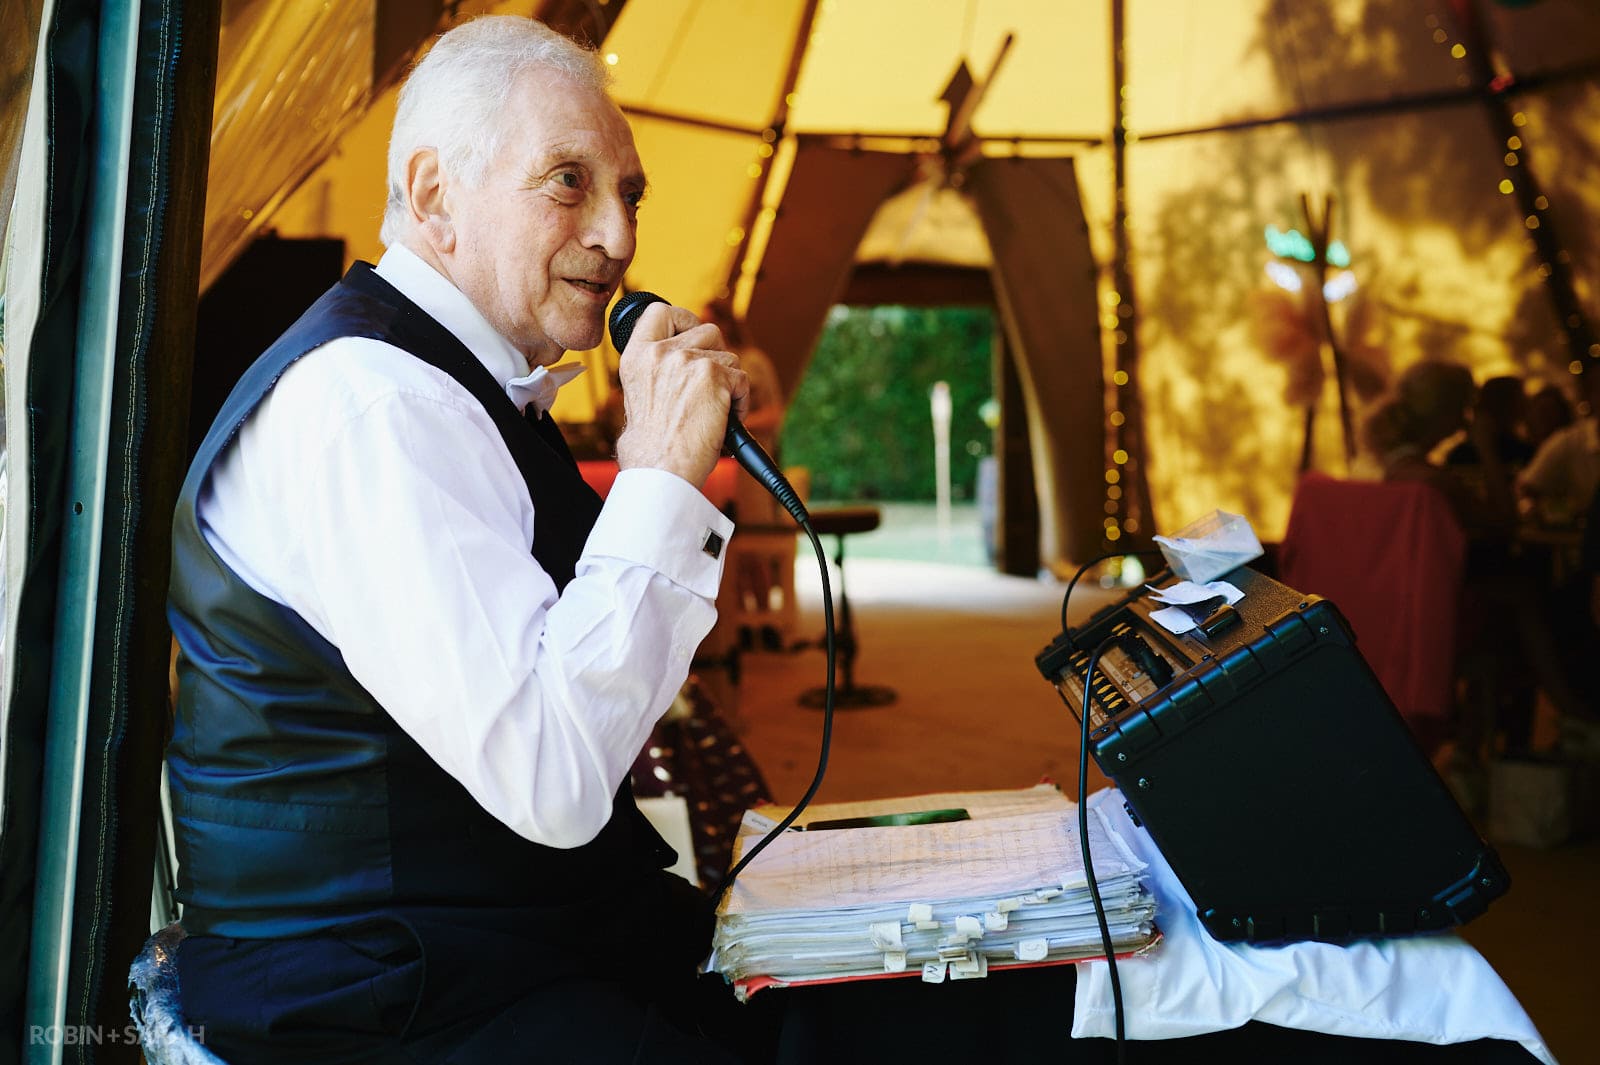 Elderly singer performs for wedding guests inside tipi